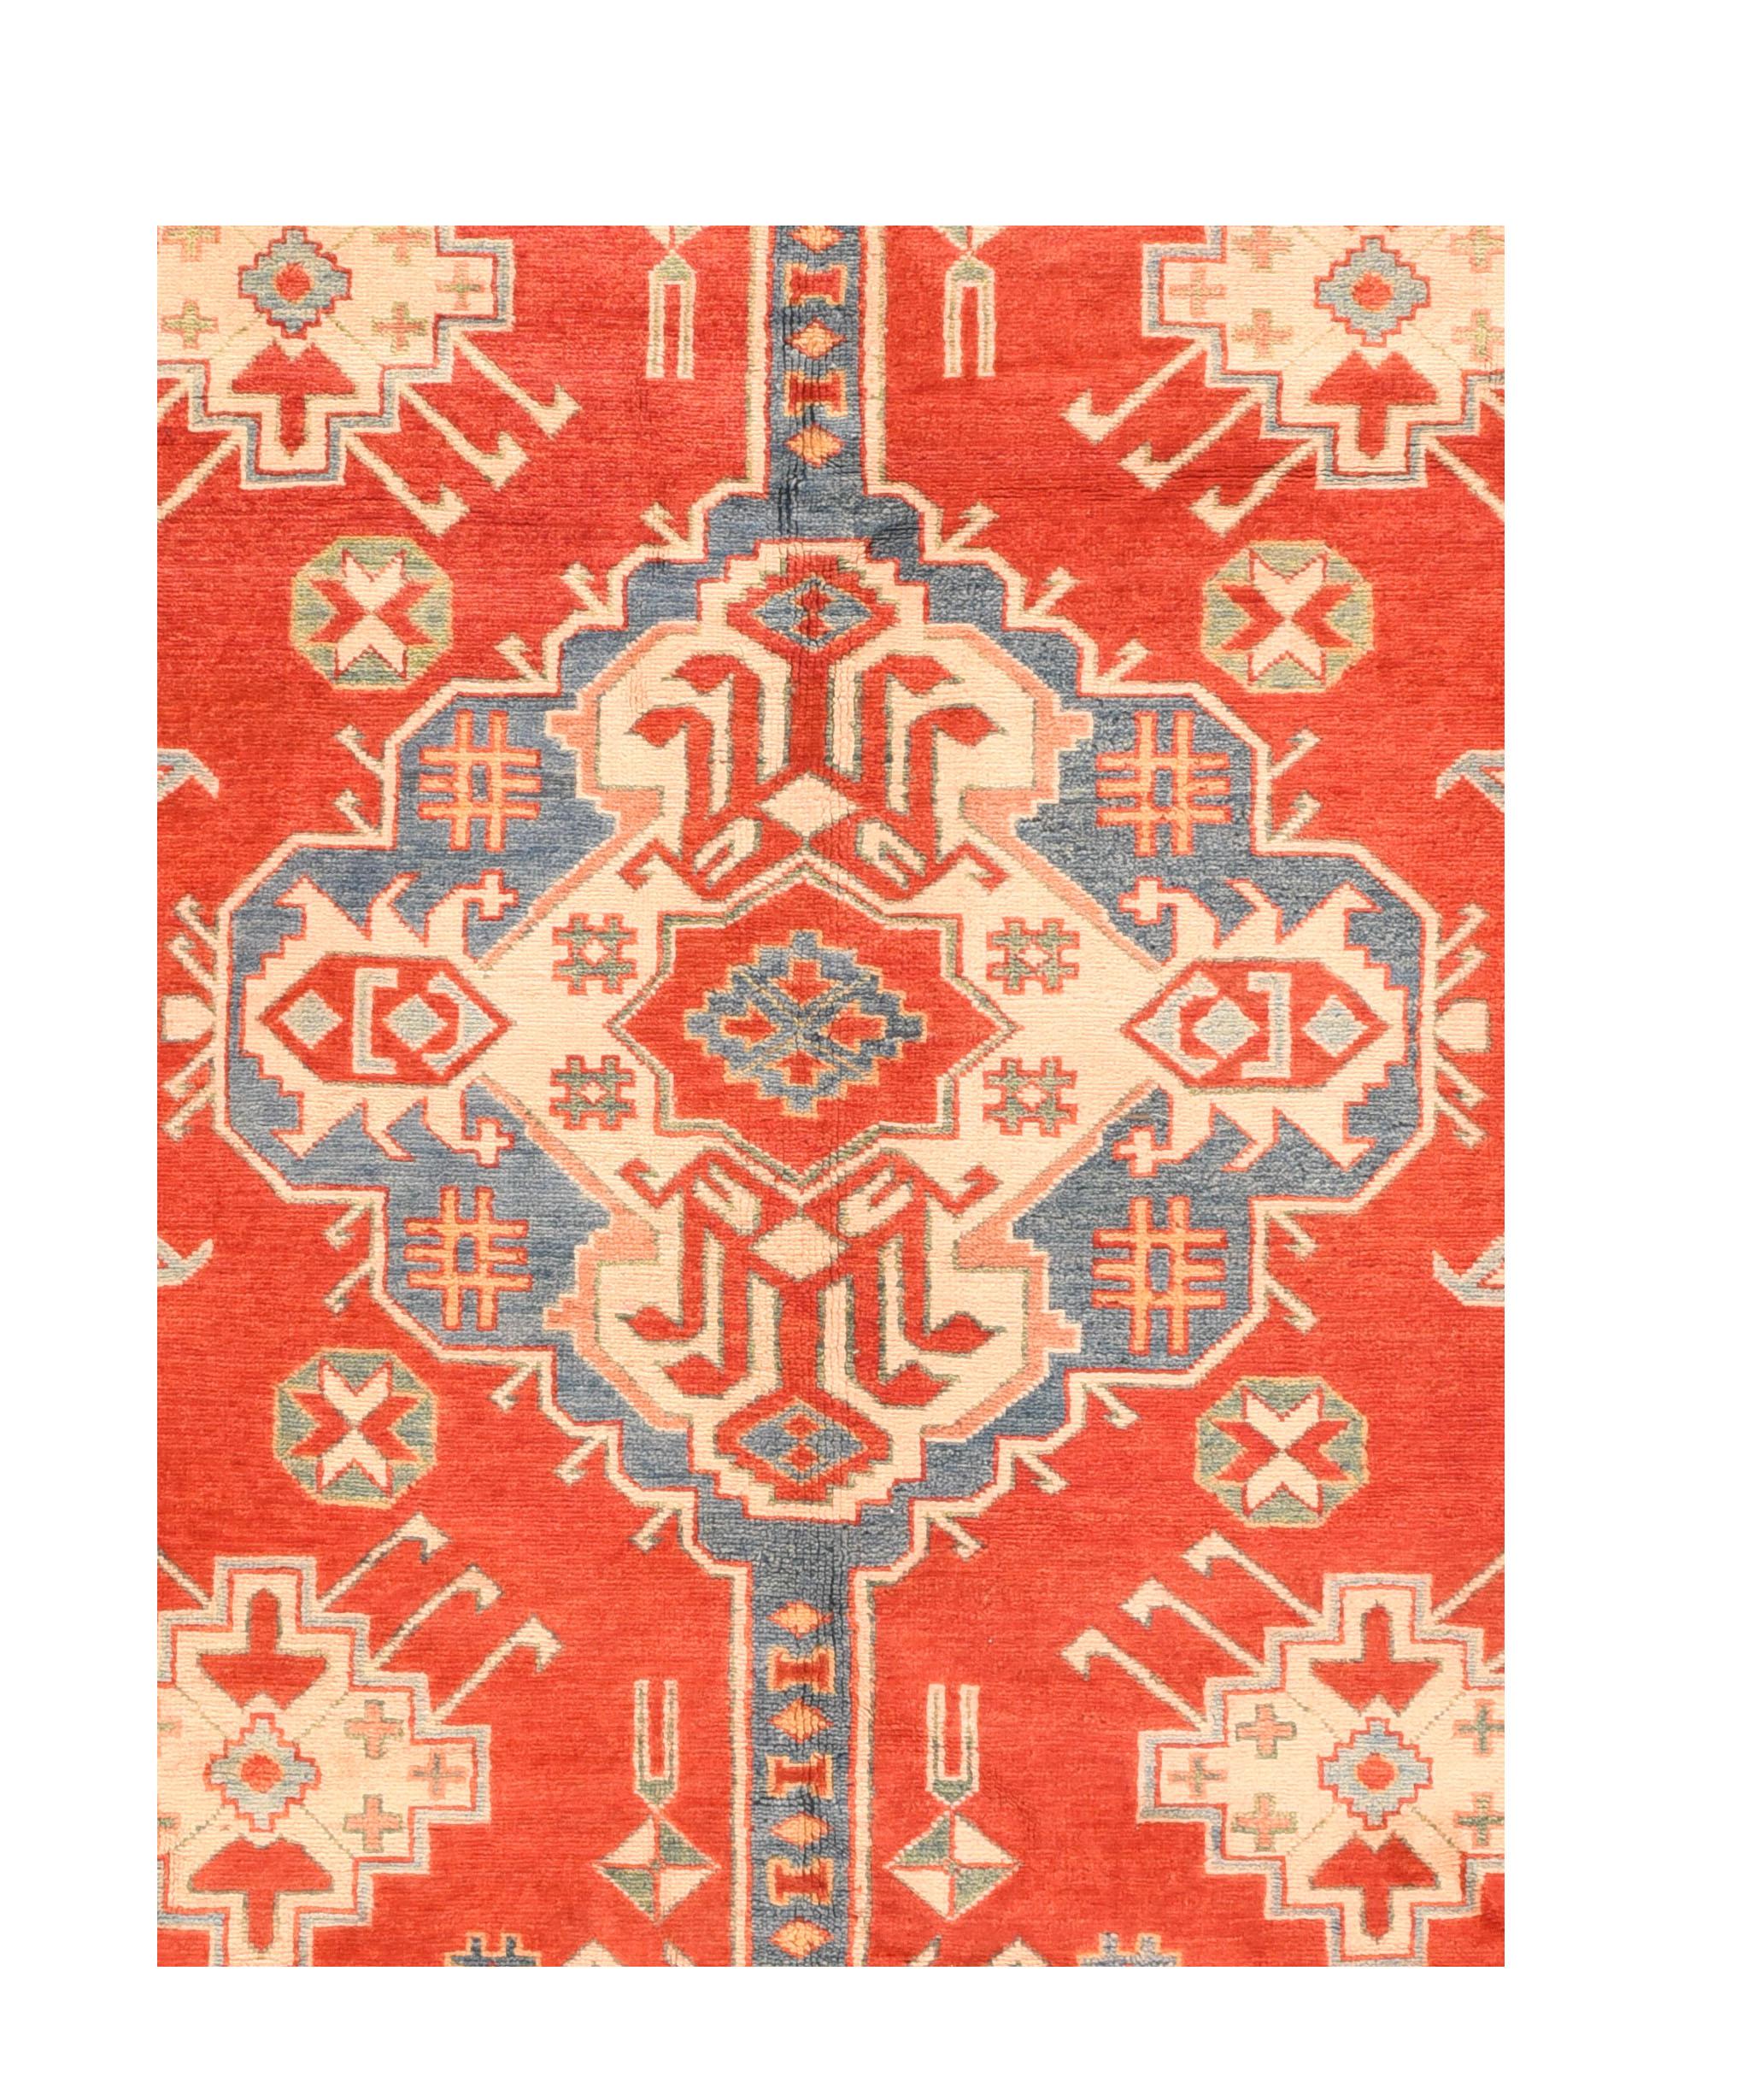 Tapis pakistanais Pak Kazak, noué à la main

Design : Floral

Un tapis pakistanais (Pak Persian rug ou Pakistani carpet) est un type de revêtement de sol textile fait à la main, traditionnellement fabriqué au Pakistan.

La fabrication de tapis